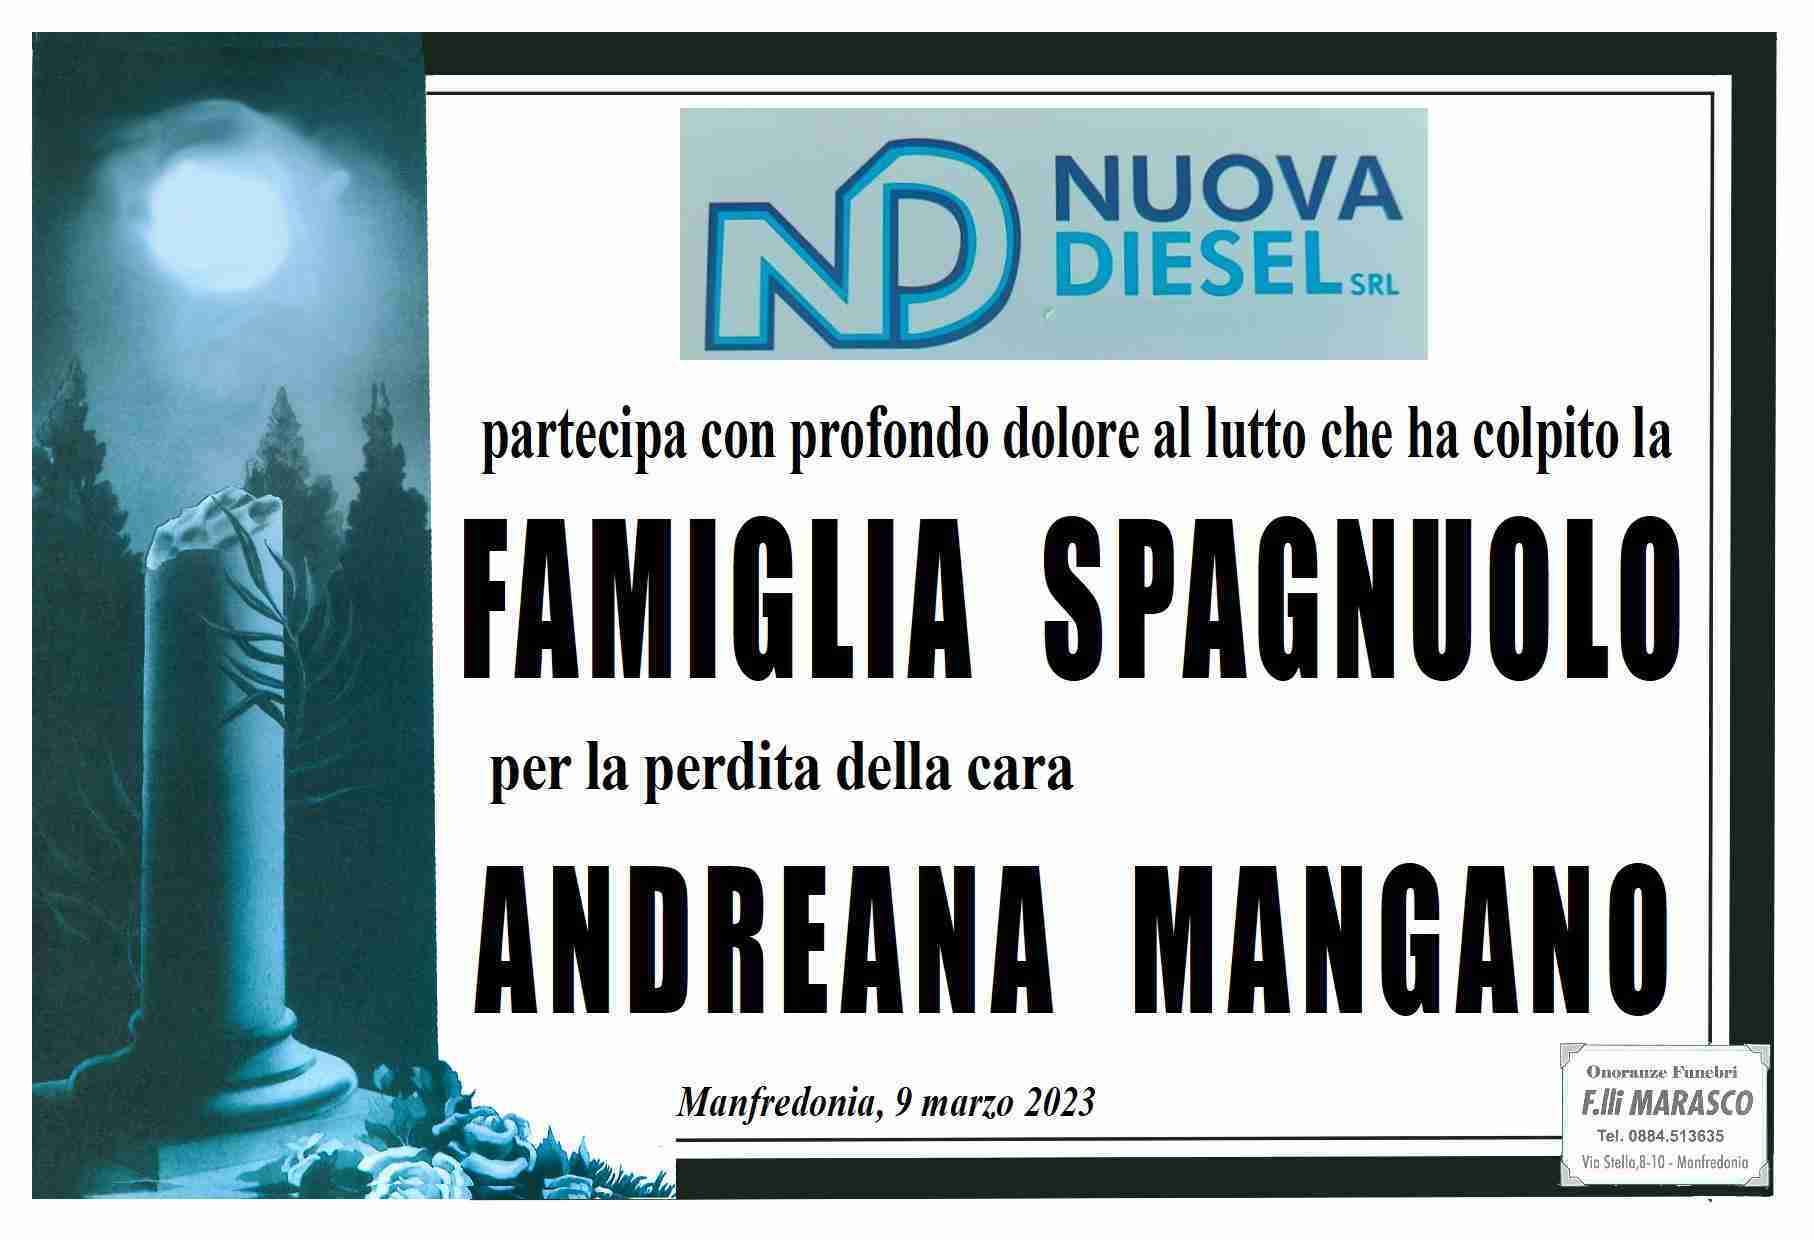 Andreana Mangano